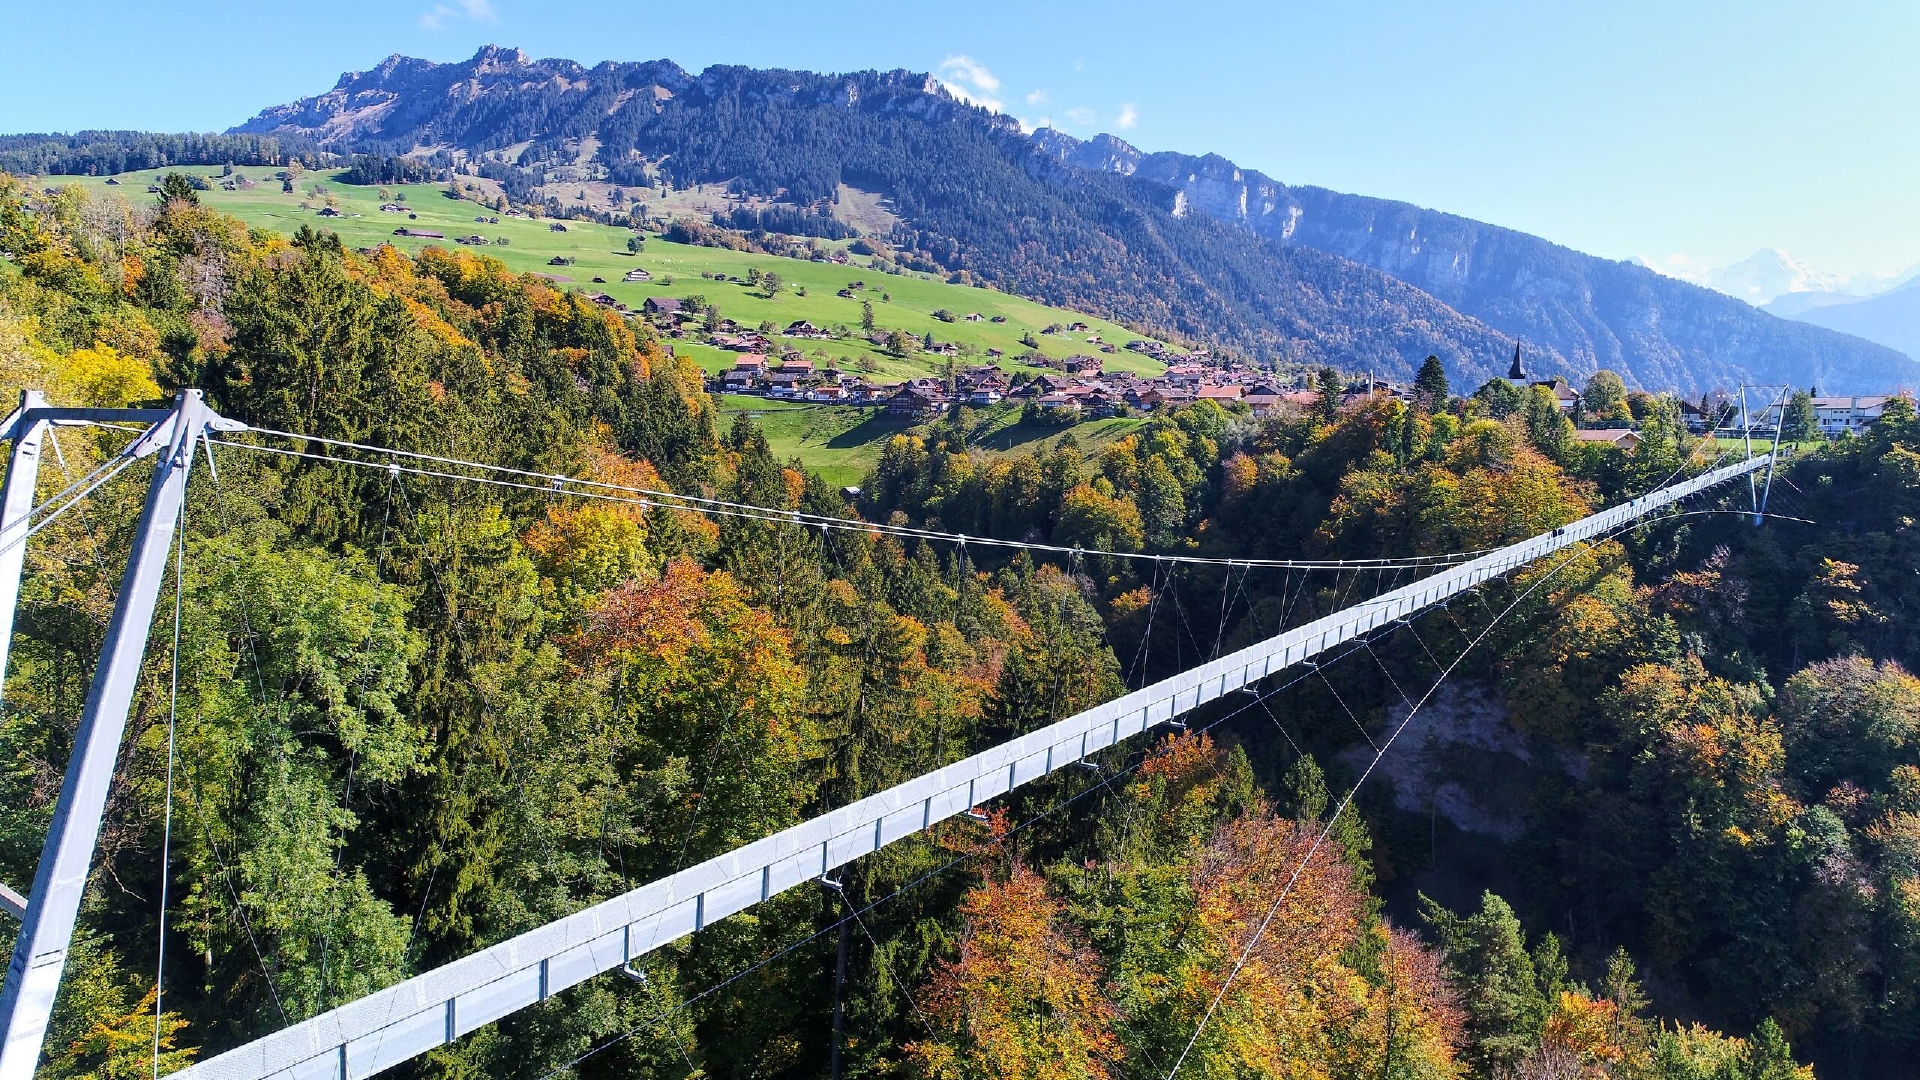 Cùng khám phá những cảnh đẹp mê hồn tại Thụy Sĩ